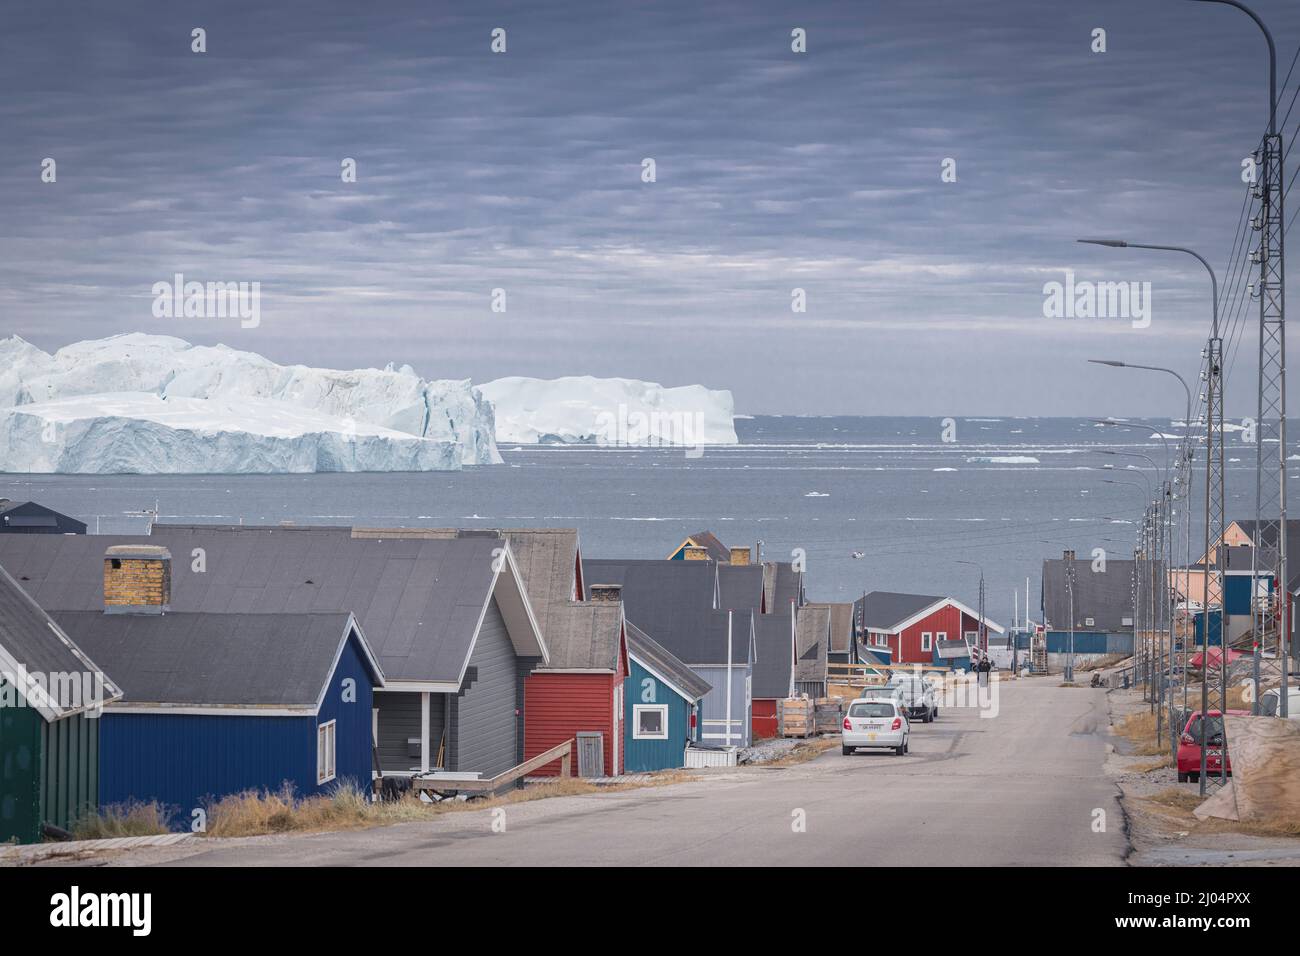 Typische arktische Stadt, umgeben von großen Eisbergen Stockfoto